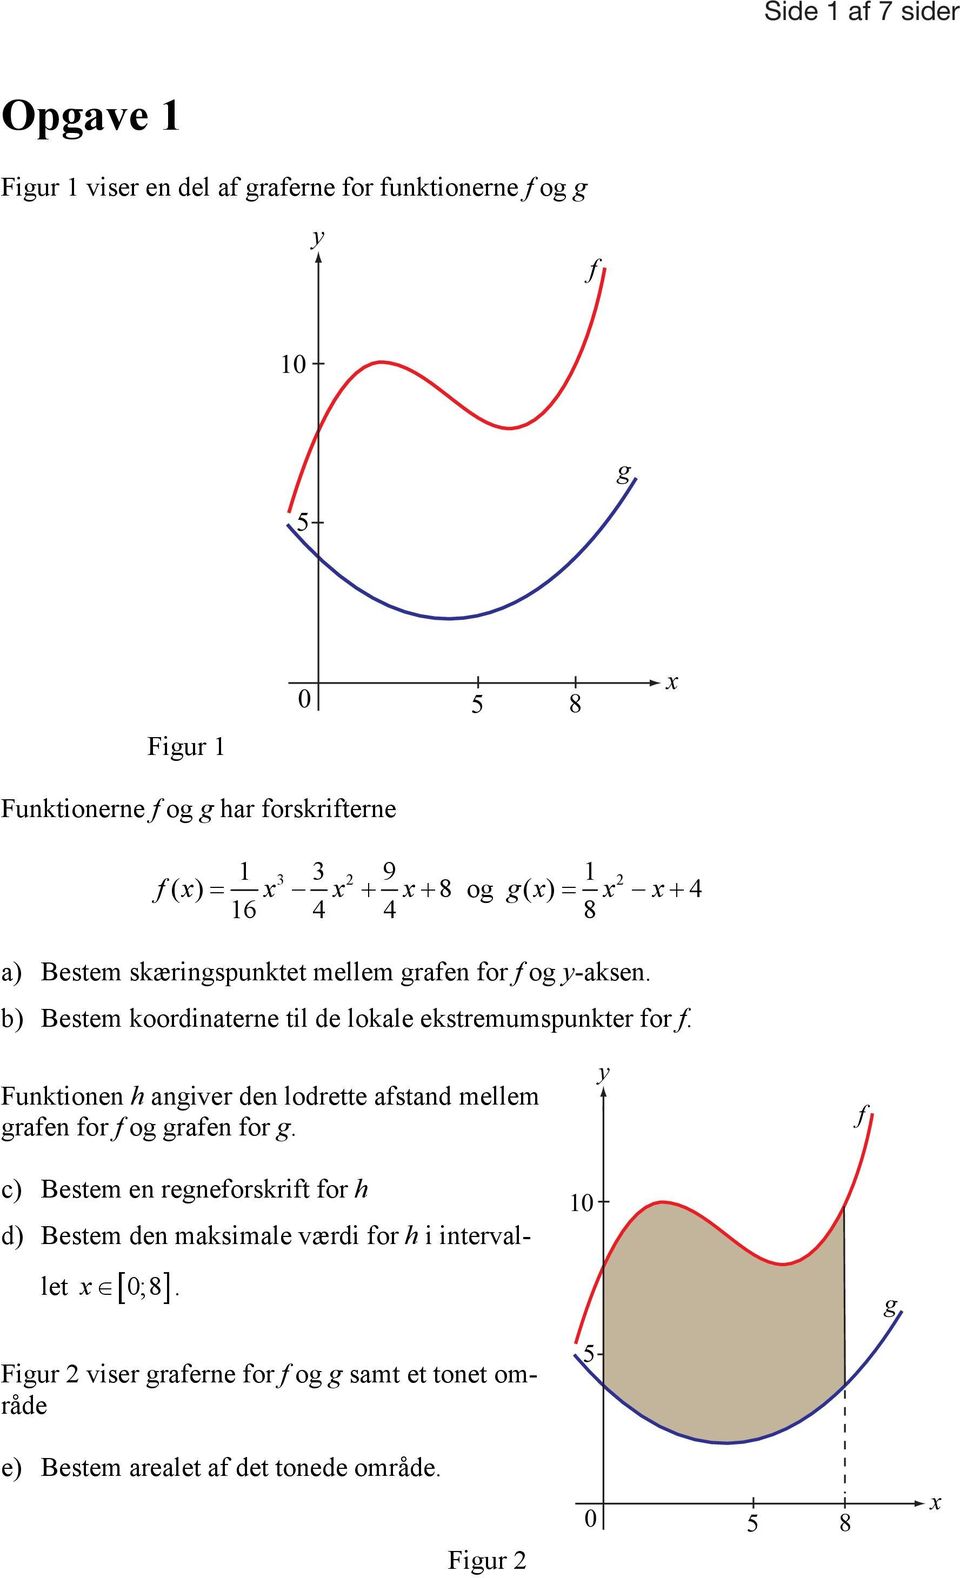 b) Bestem koordinaterne til de lokale ekstremumspunkter for f. Funktionen h angiver den lodrette afstand mellem grafen for f og grafen for g.